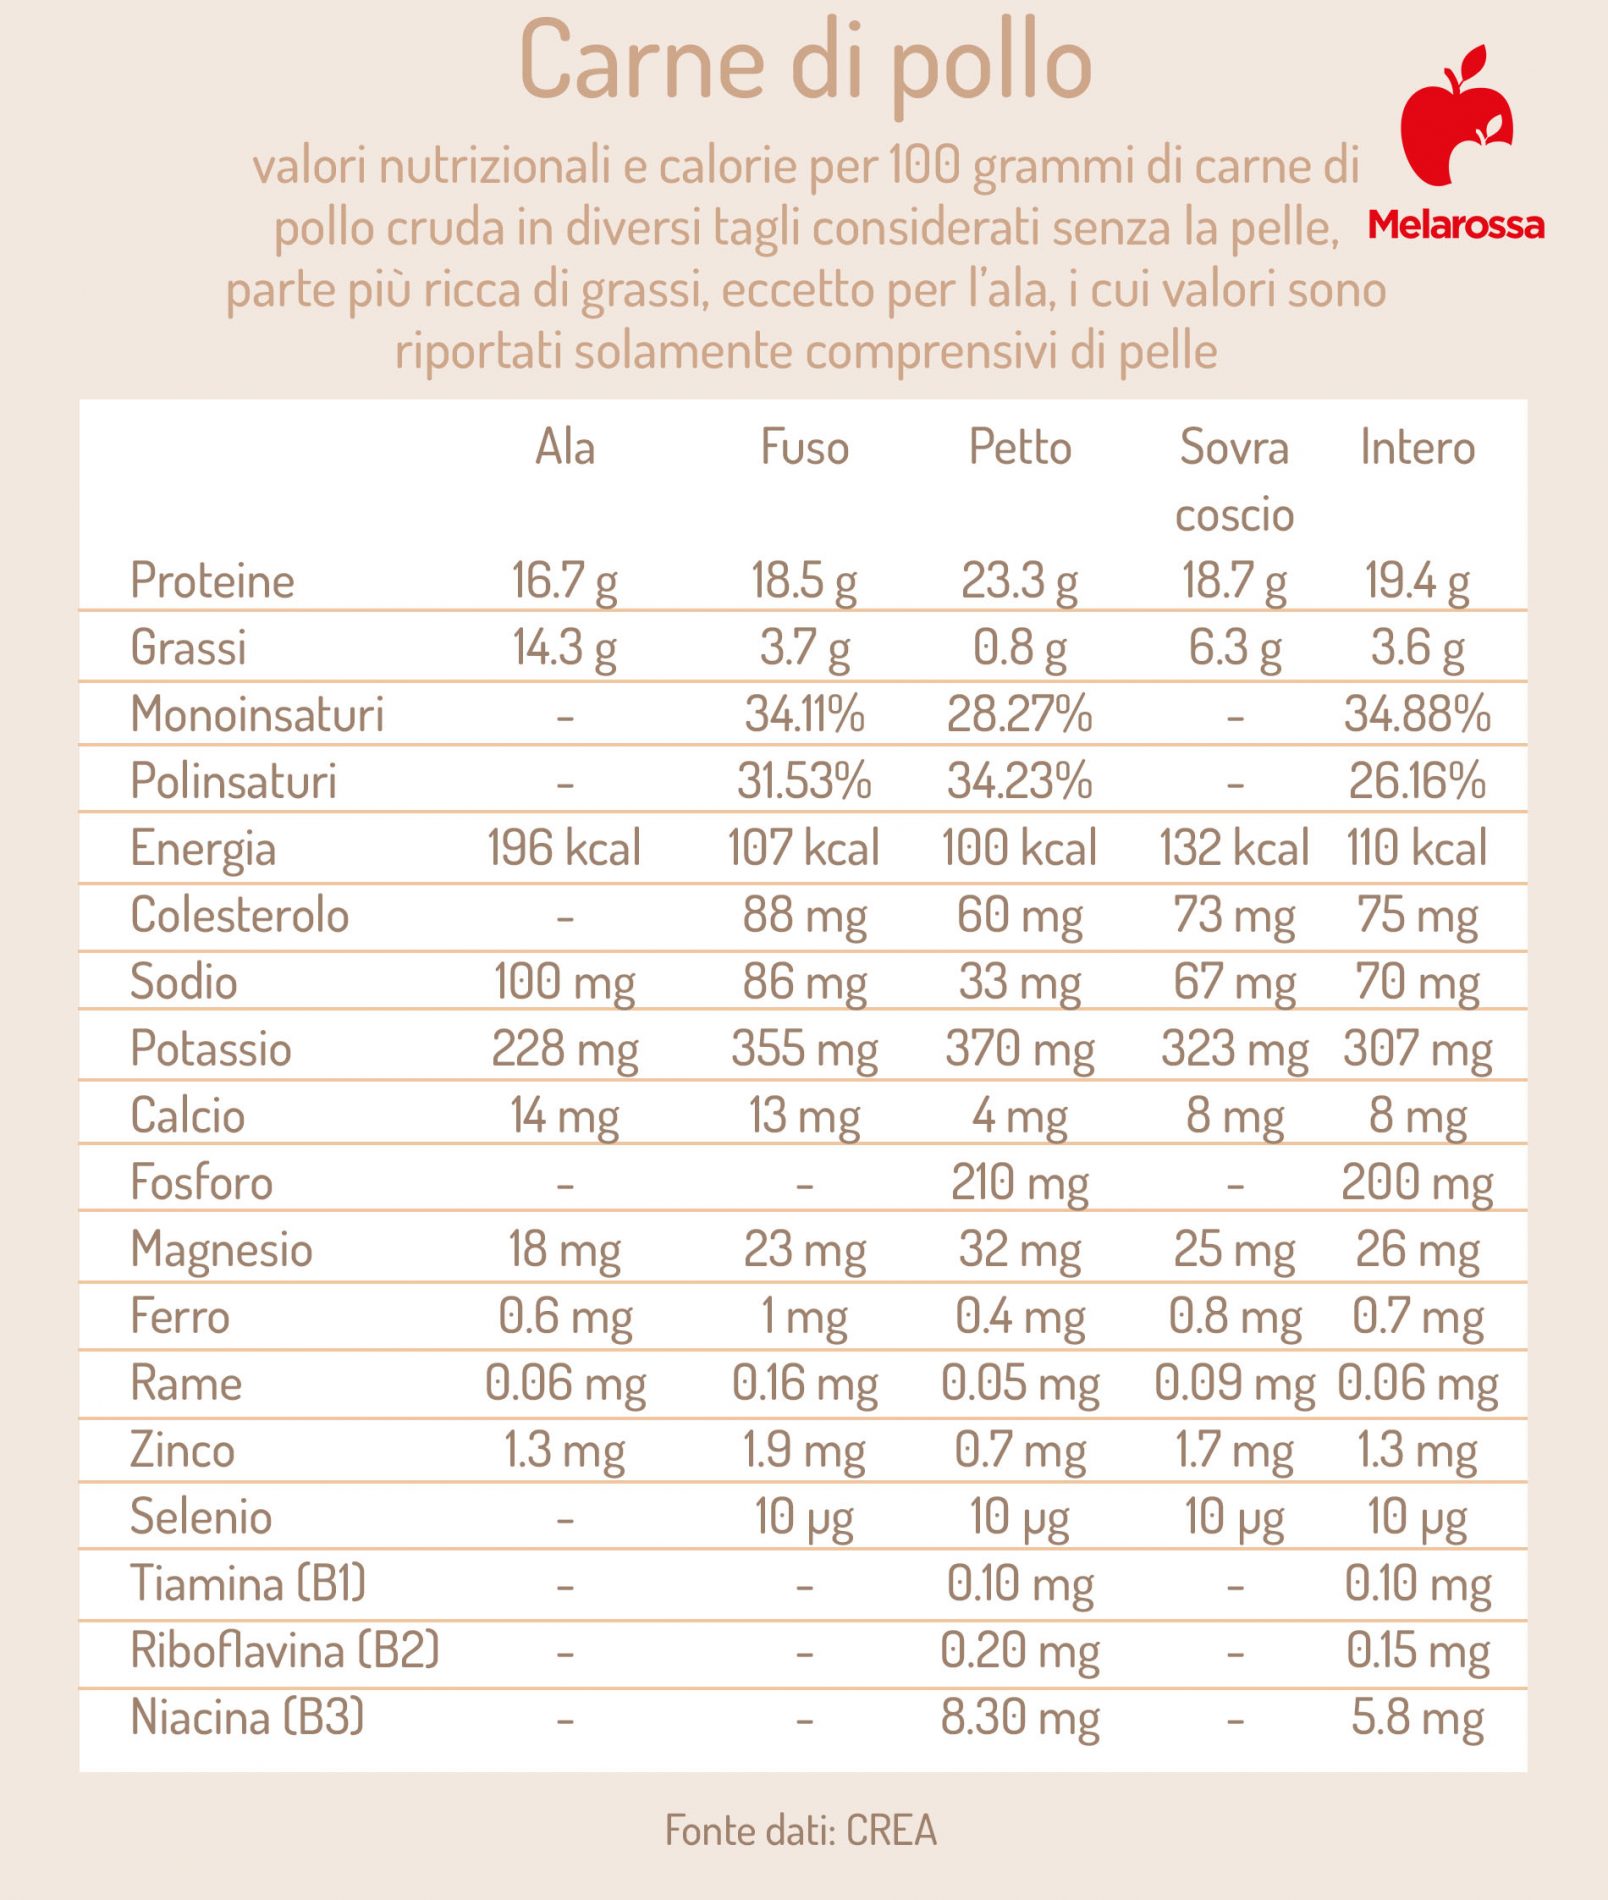 calorie e valori nutrizionali dei diversi tagli della carne di pollo 